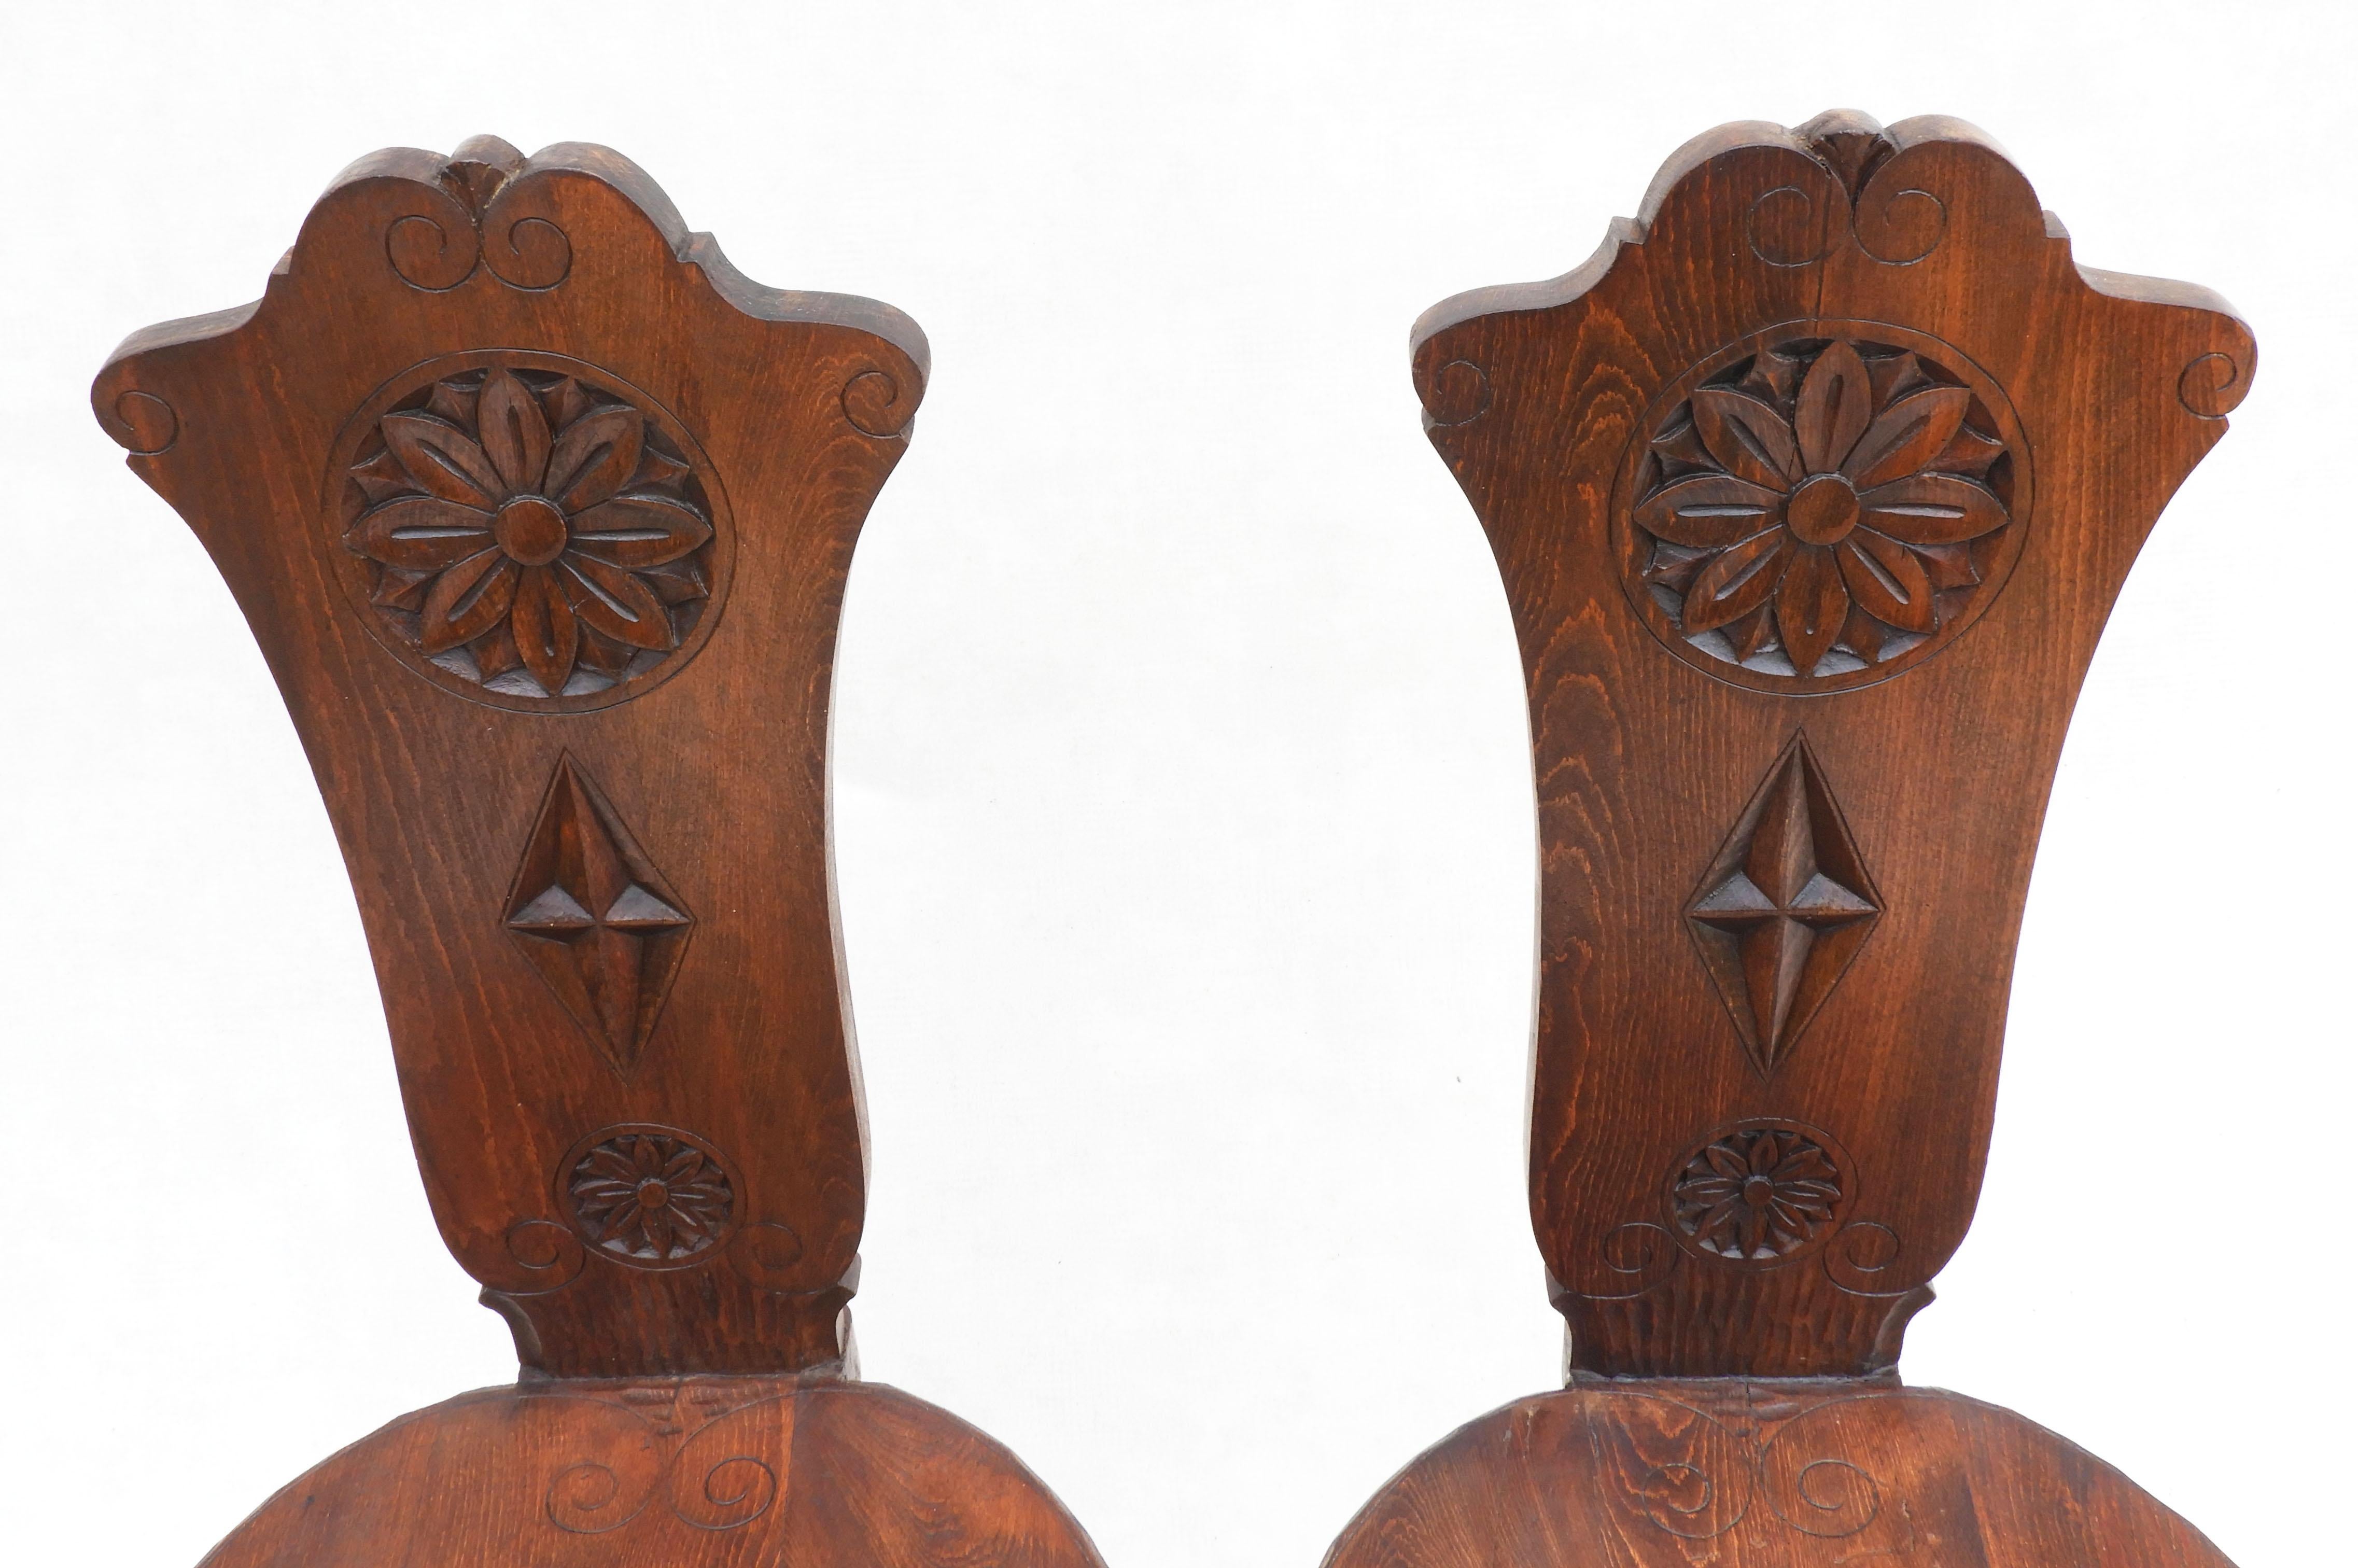 Pair of Basque Tripod Chairs 1950s European Folk Art For Sale 4